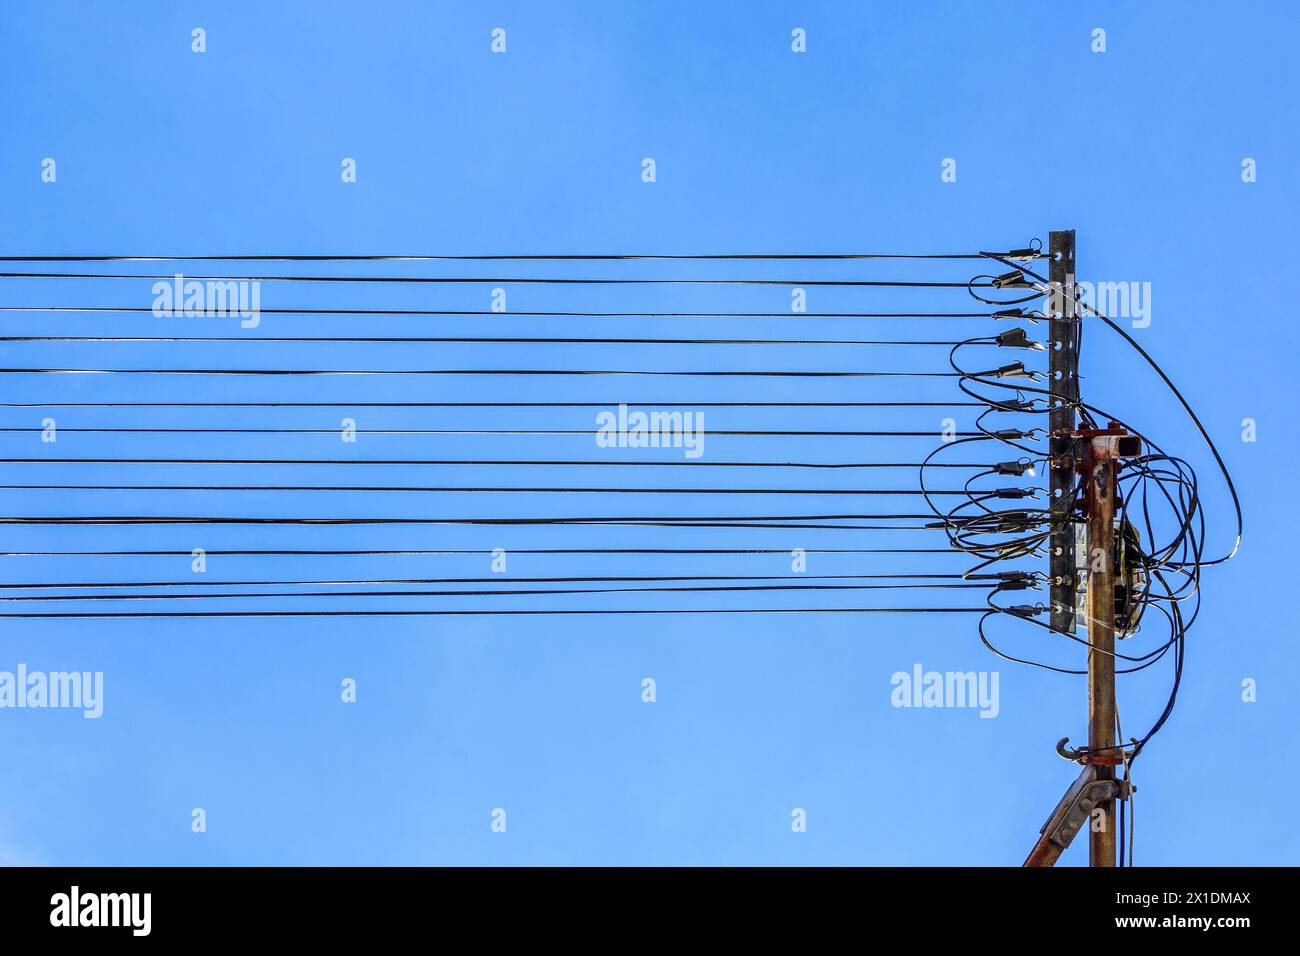 Nuovi cavi in fibra ottica per Internet ad alta velocità montati su vecchie staffe in metallo lungo la stretta strada cittadina - le Blanc, Indre (36), Francia. Foto Stock